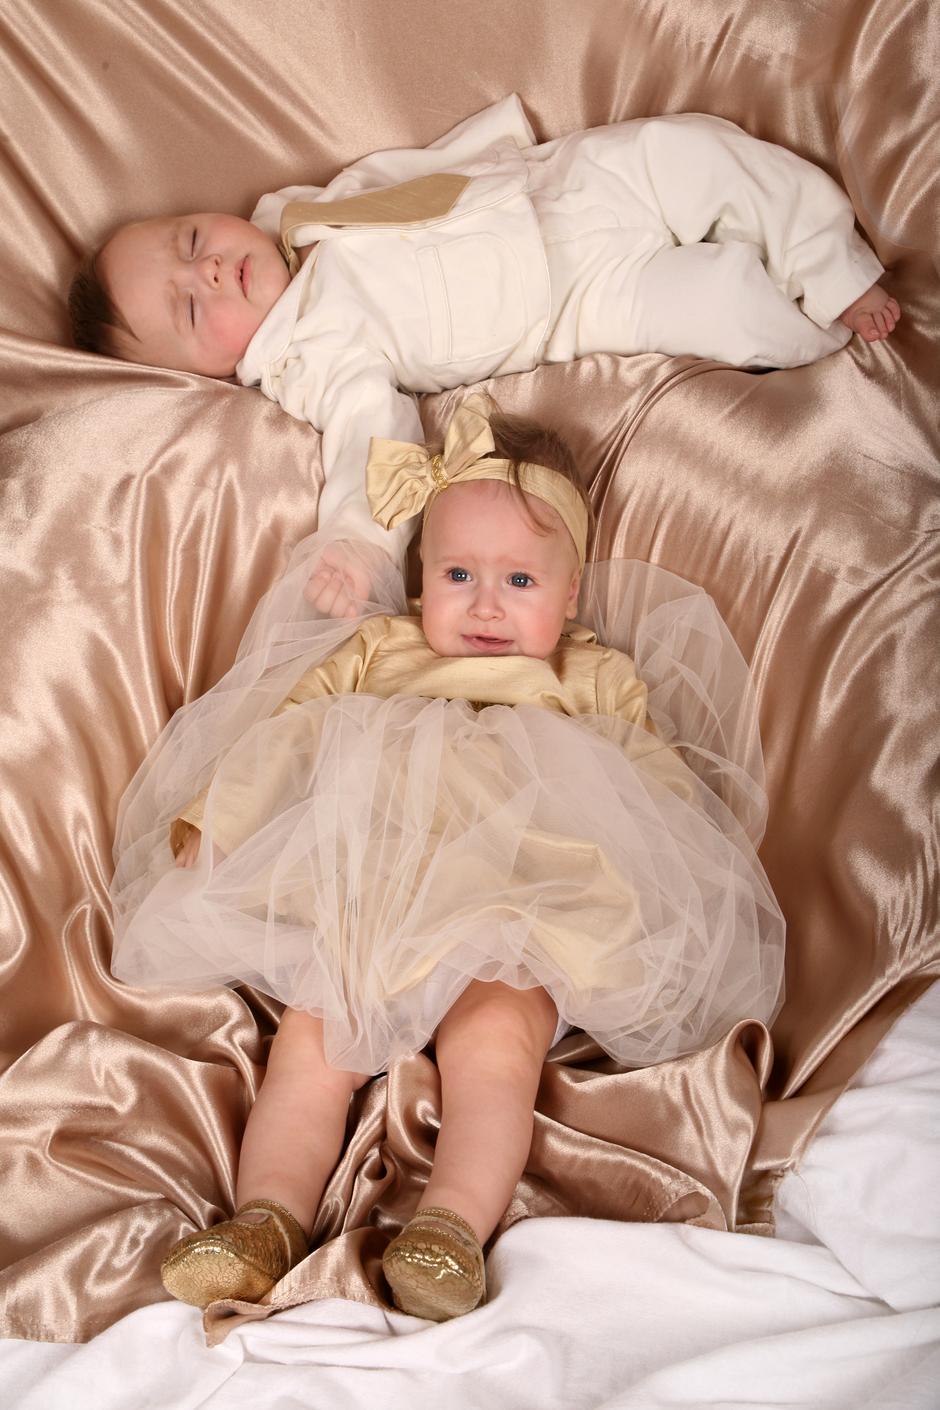 blizanci brat i sestra djeca fotografiranje | Author: Jasmina Cviljak